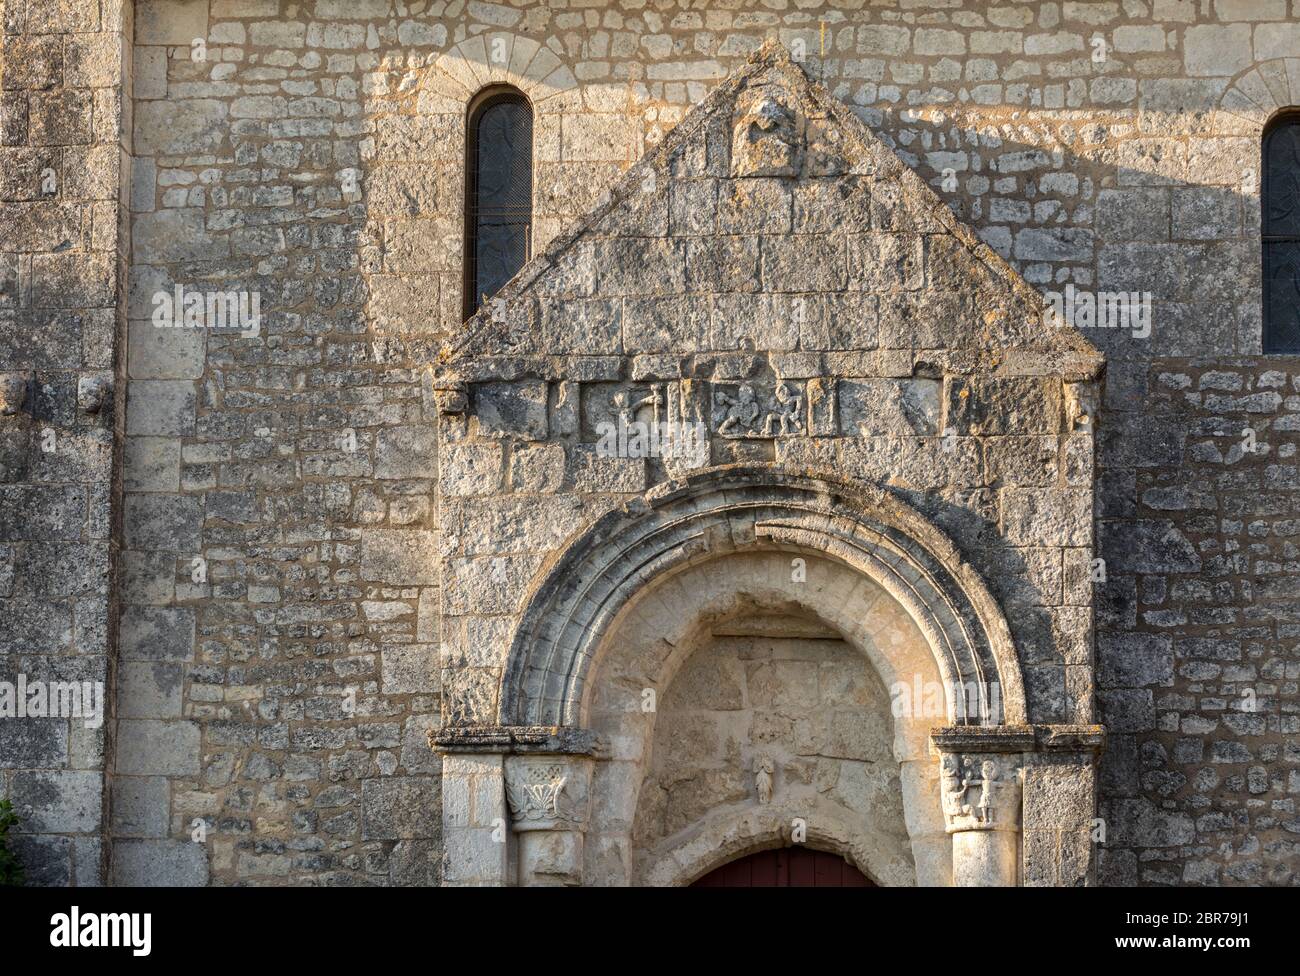 Vecchia chiesa in frazione de Saint Georges de montagne vicino a Saint Emilion, Gironde, Francia Foto Stock